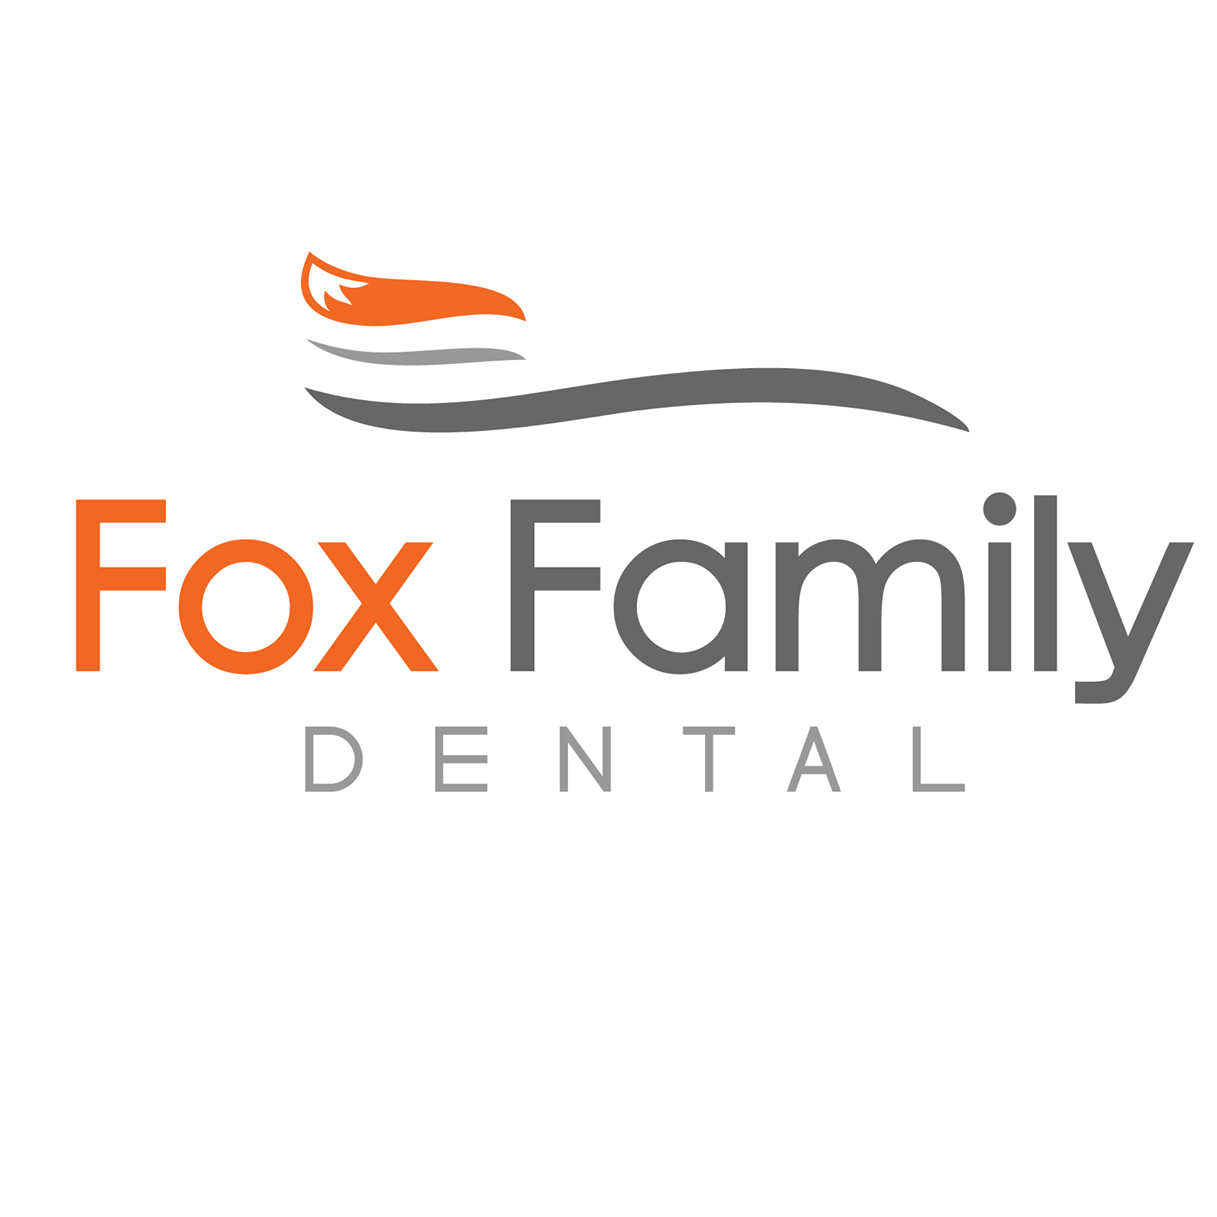 Company logo of Fox Family Dental